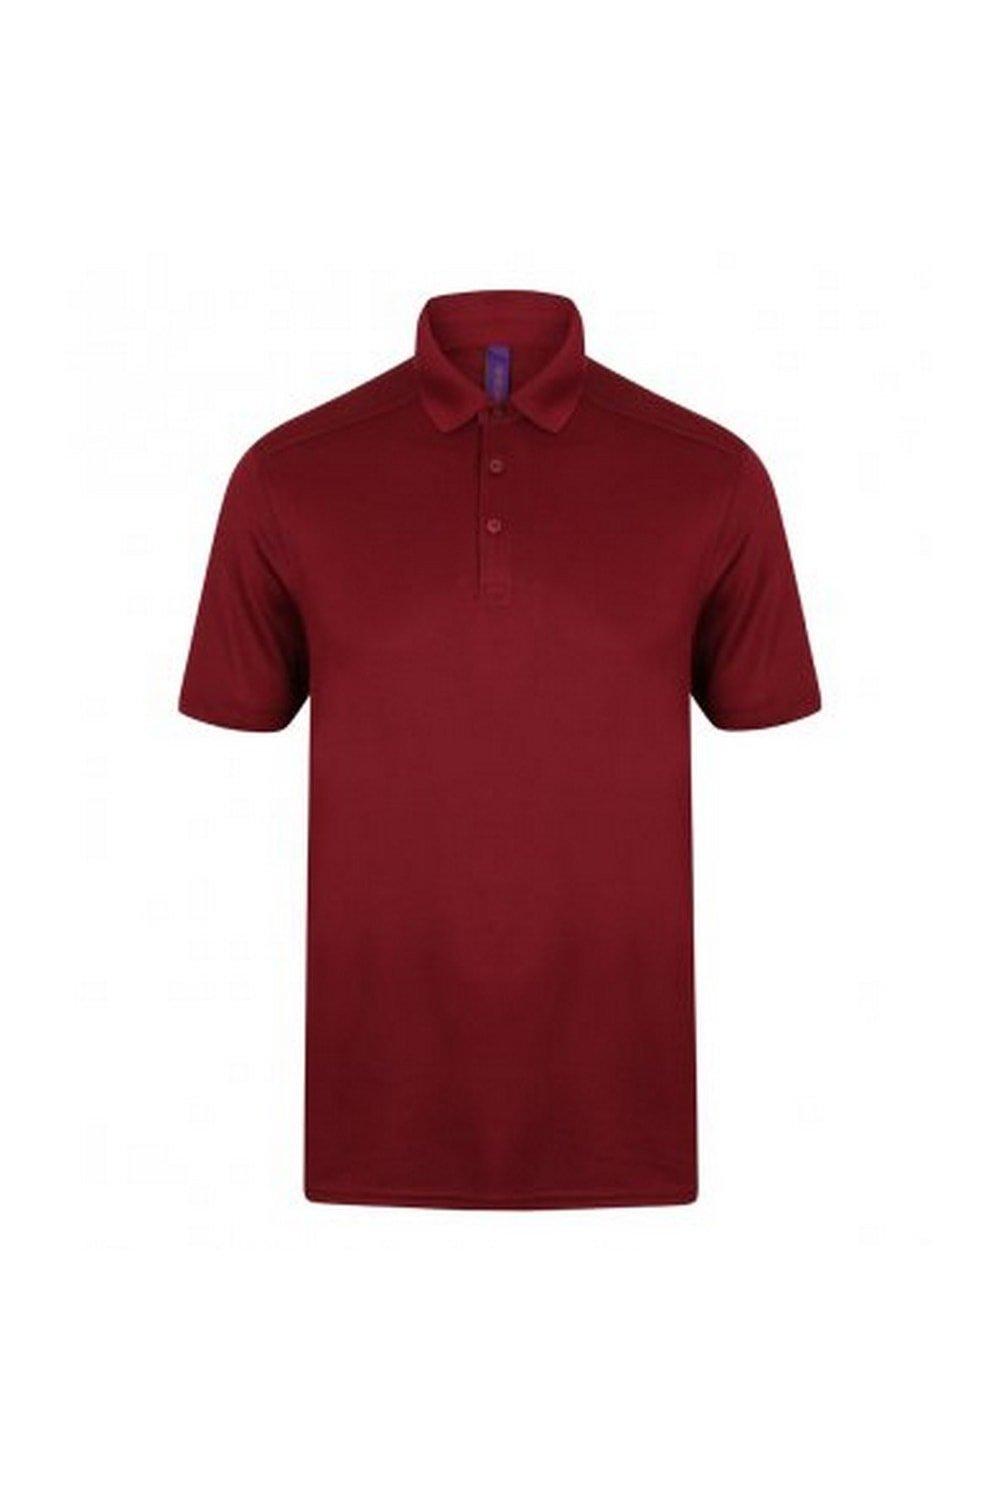 Рубашка поло из пике стрейч из микрофайна Henbury, красный рубашка поло coolplus из пике henbury зеленый